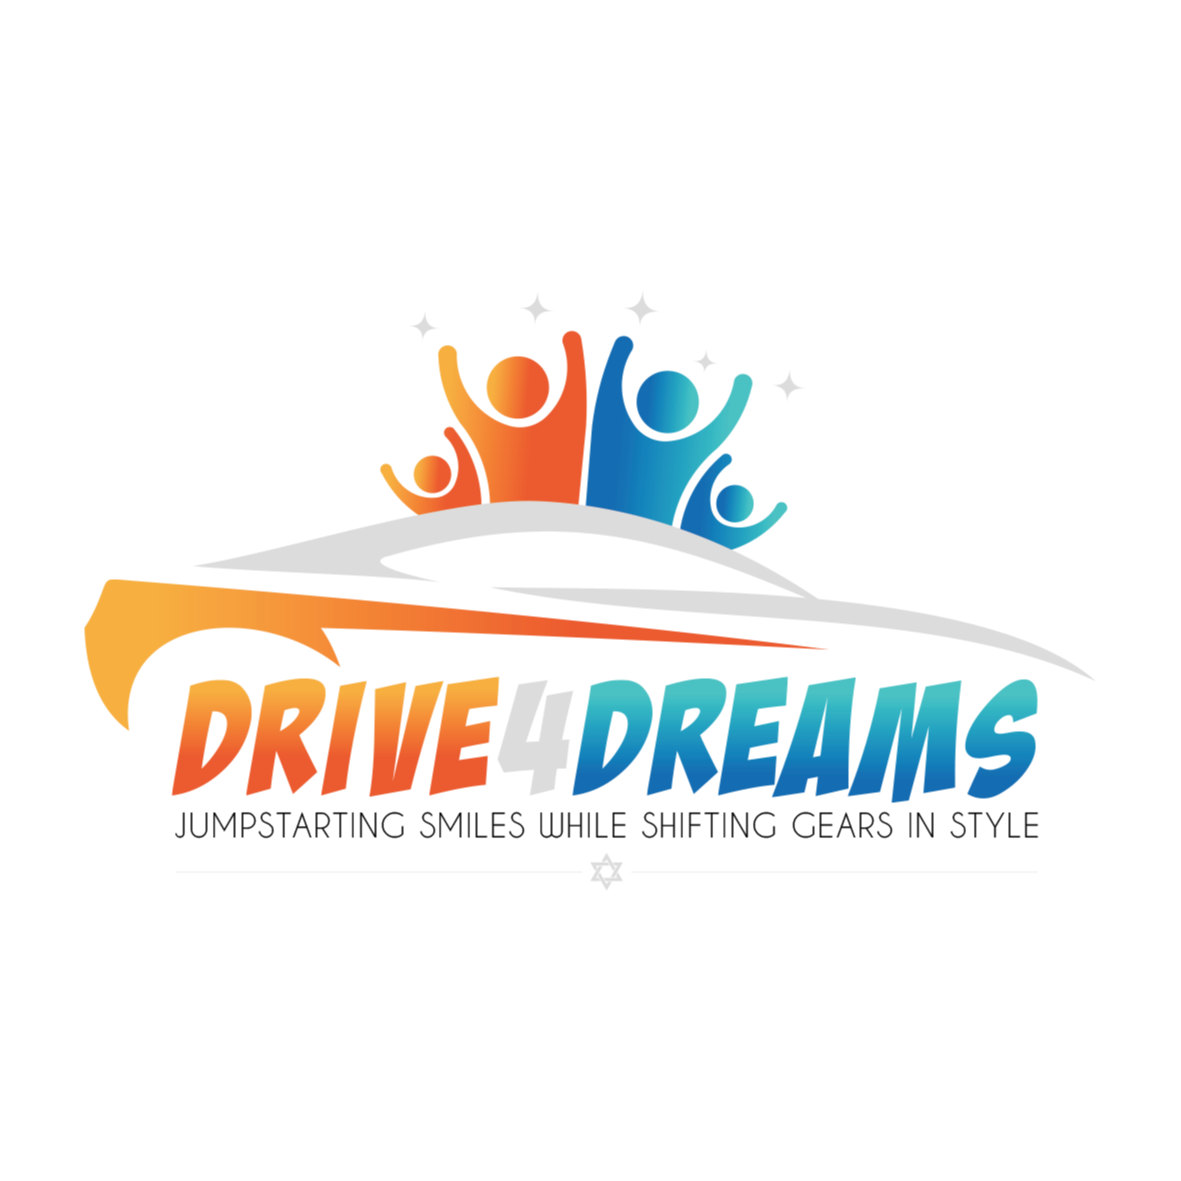 Drive4dreams Inc logo